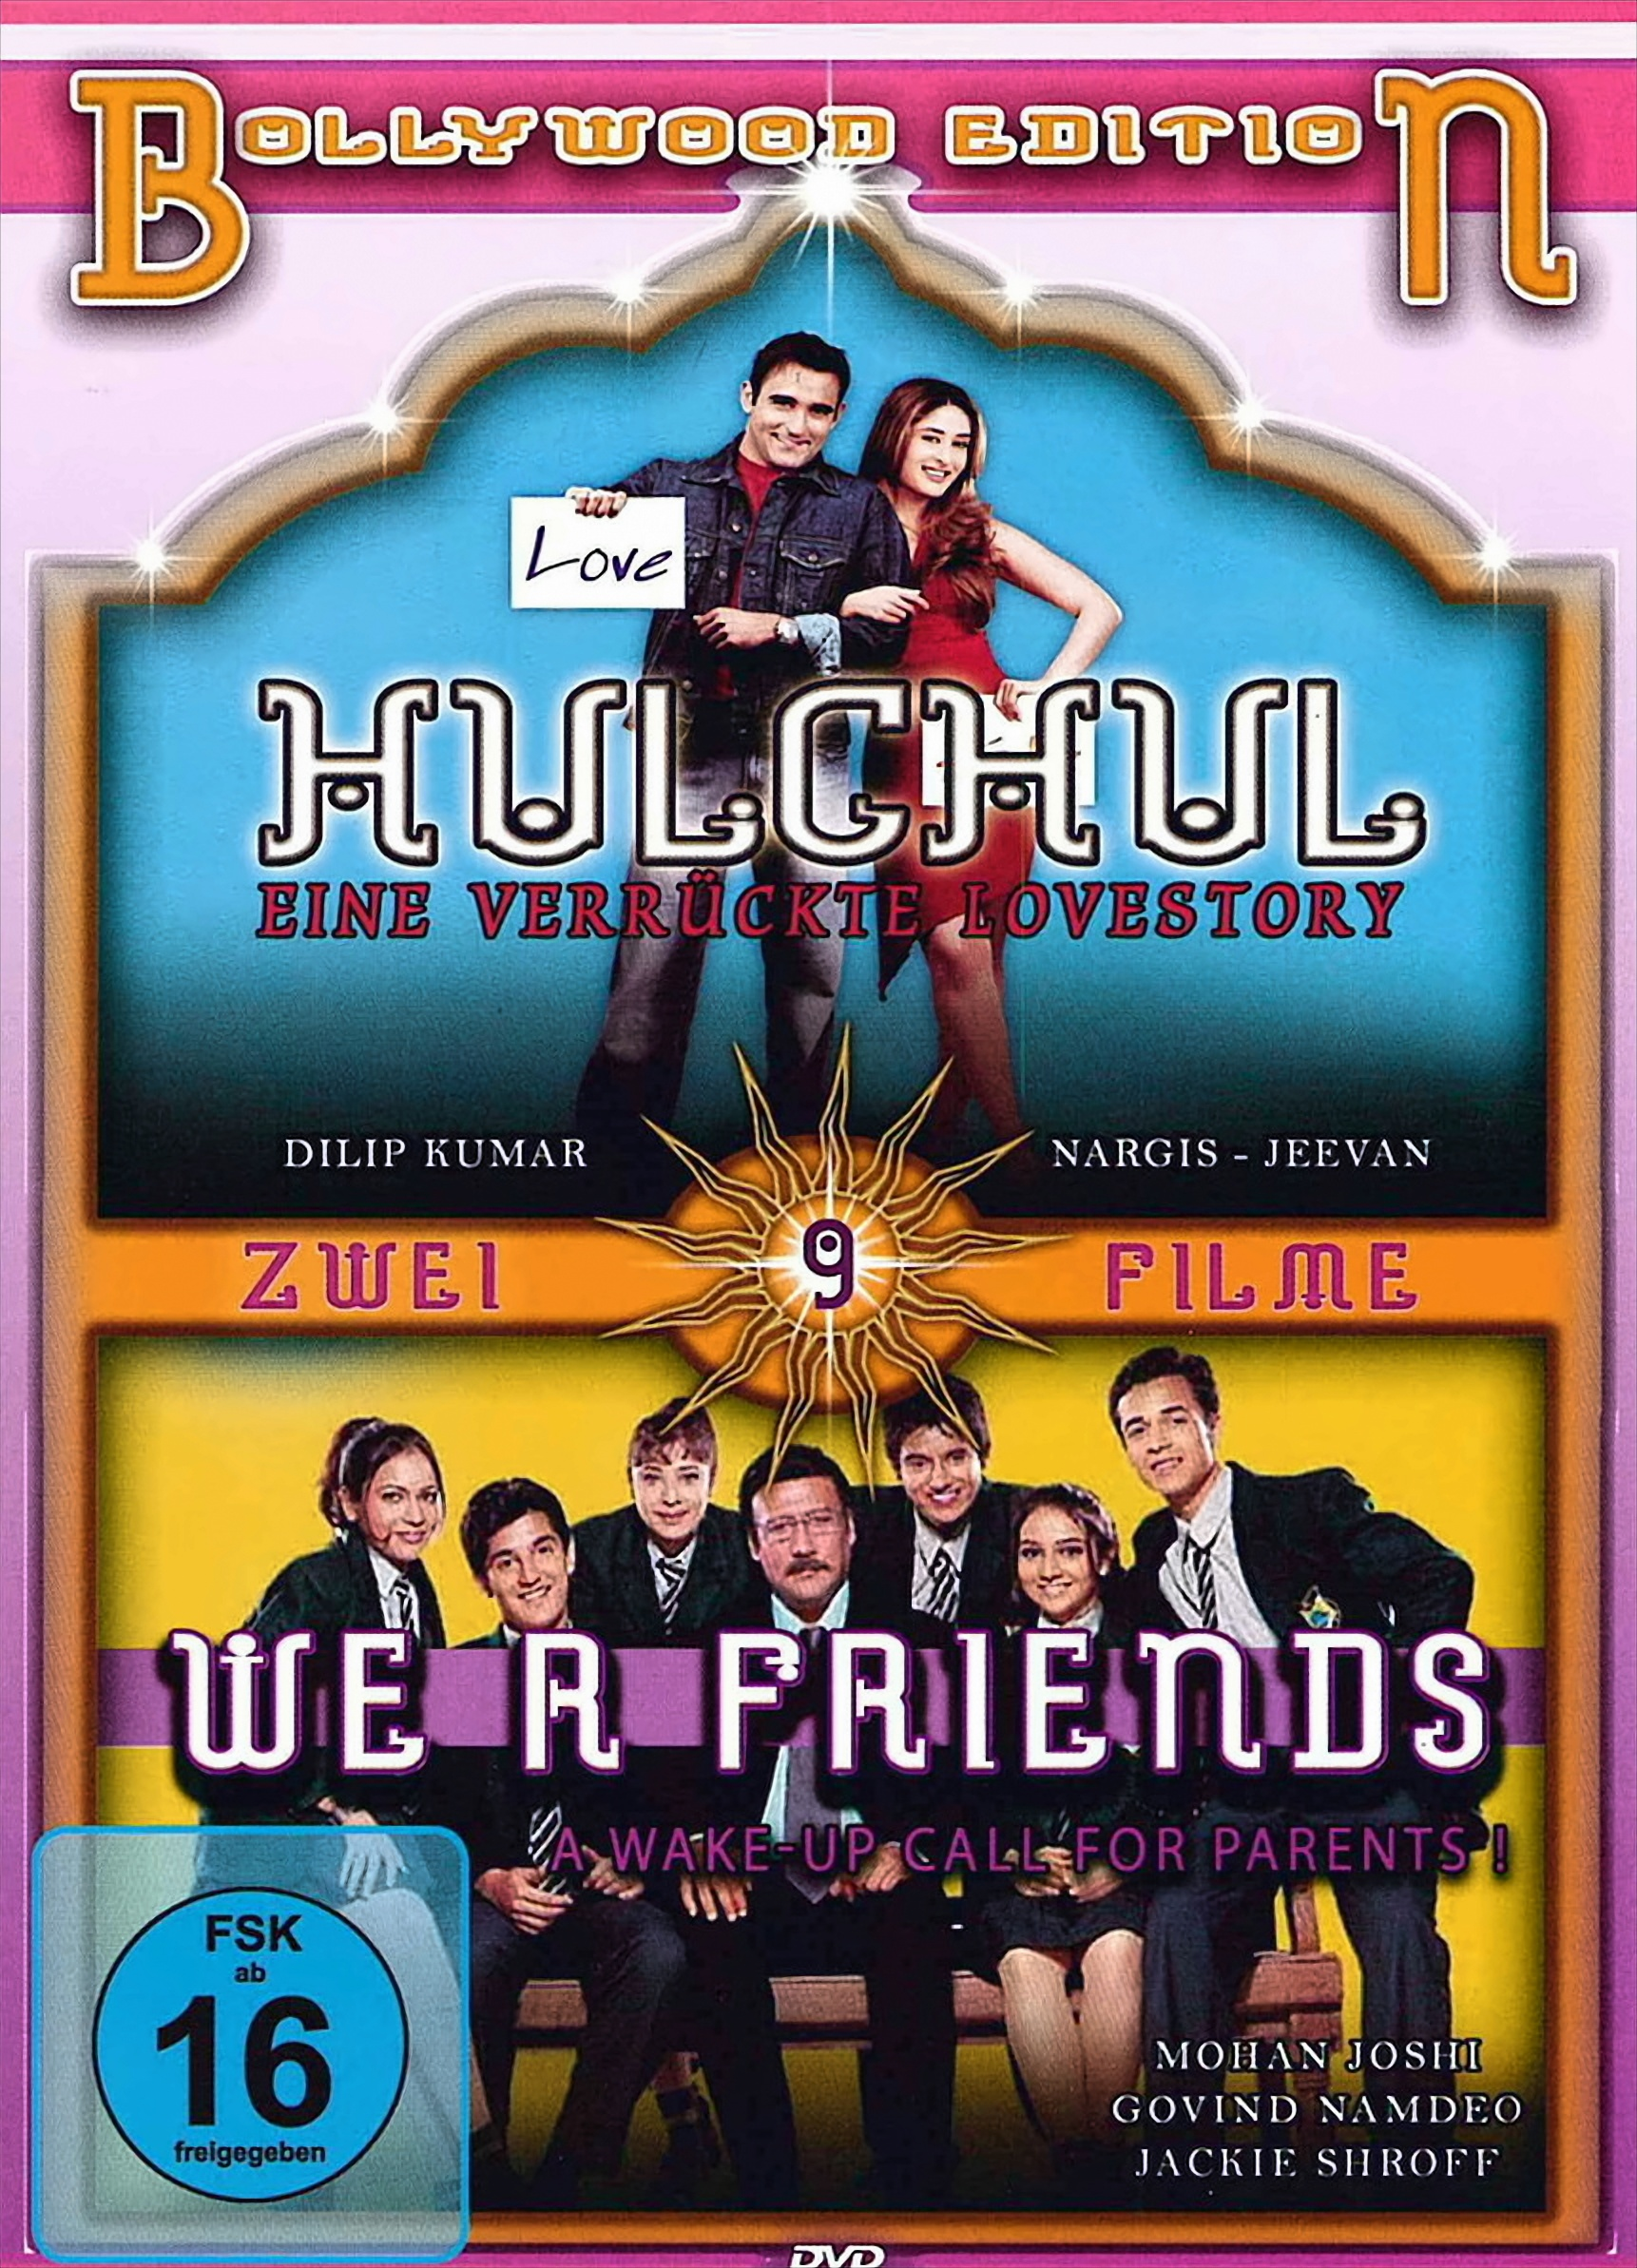 / Hulchul We Friends R DVD